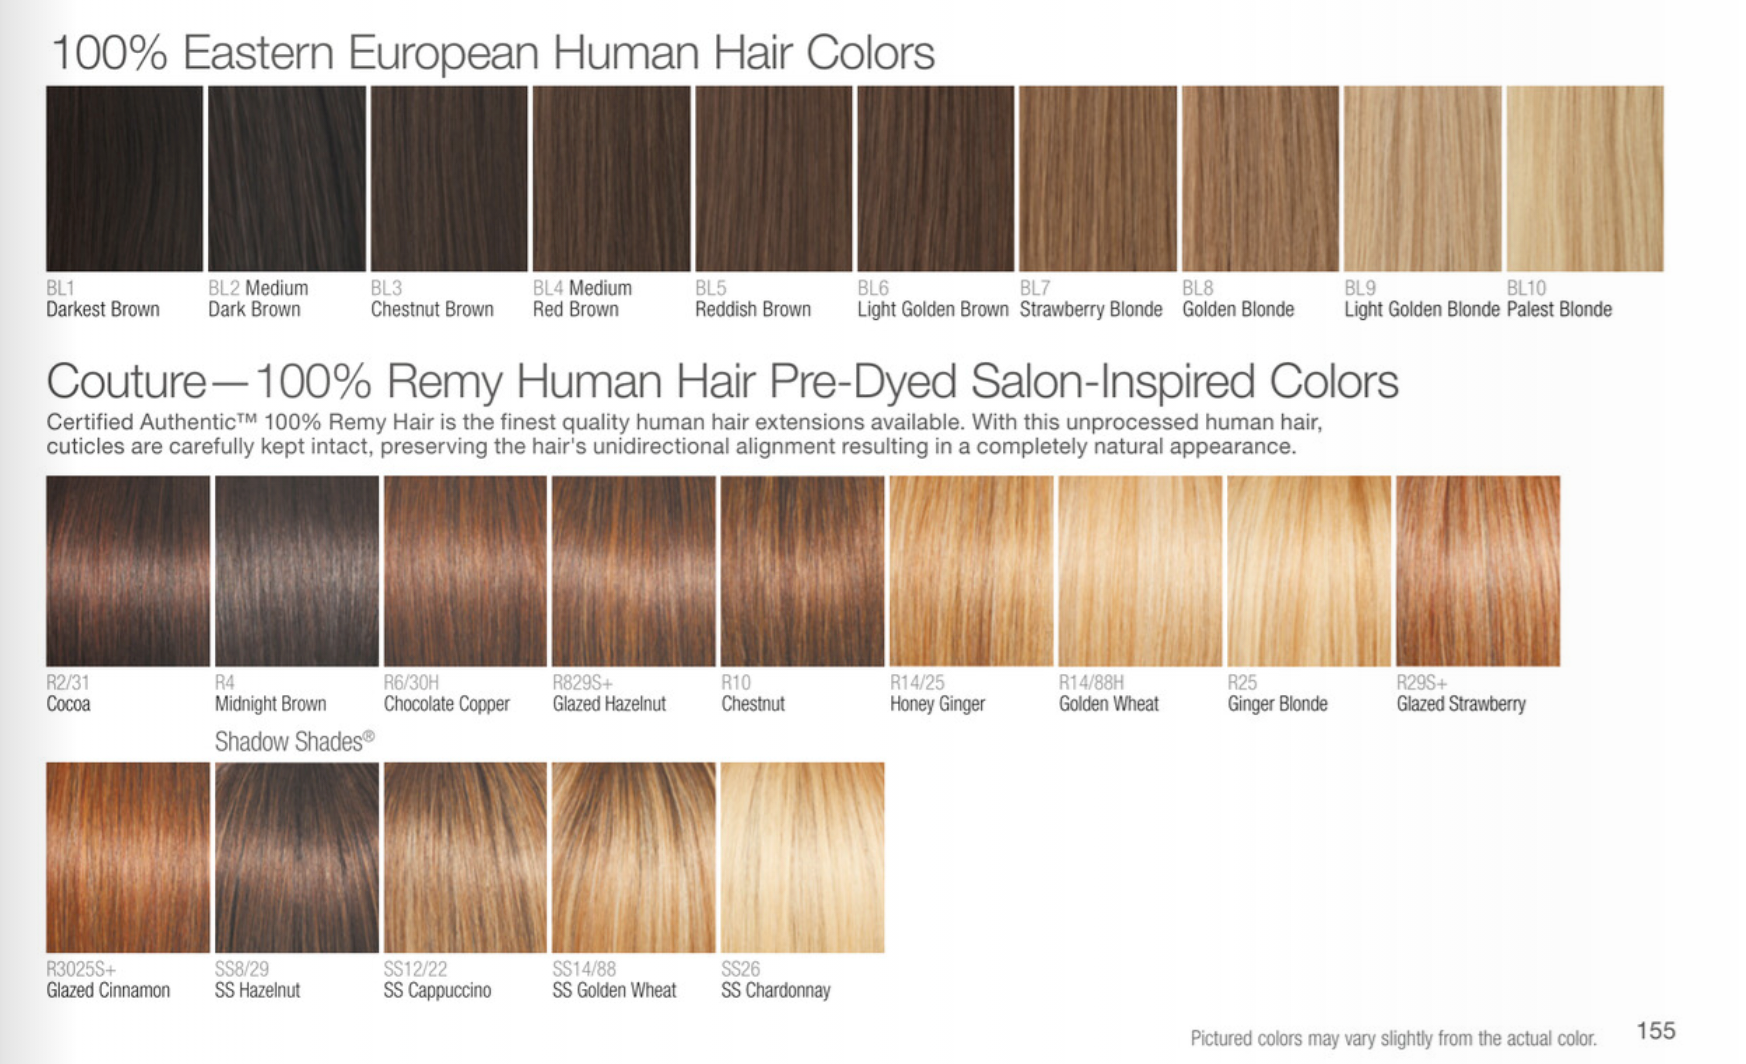 https://cdn.shopify.com/s/files/1/2953/6268/files/RW_Human_Hair_Colours_2_2048x2048.png?v=1625594433